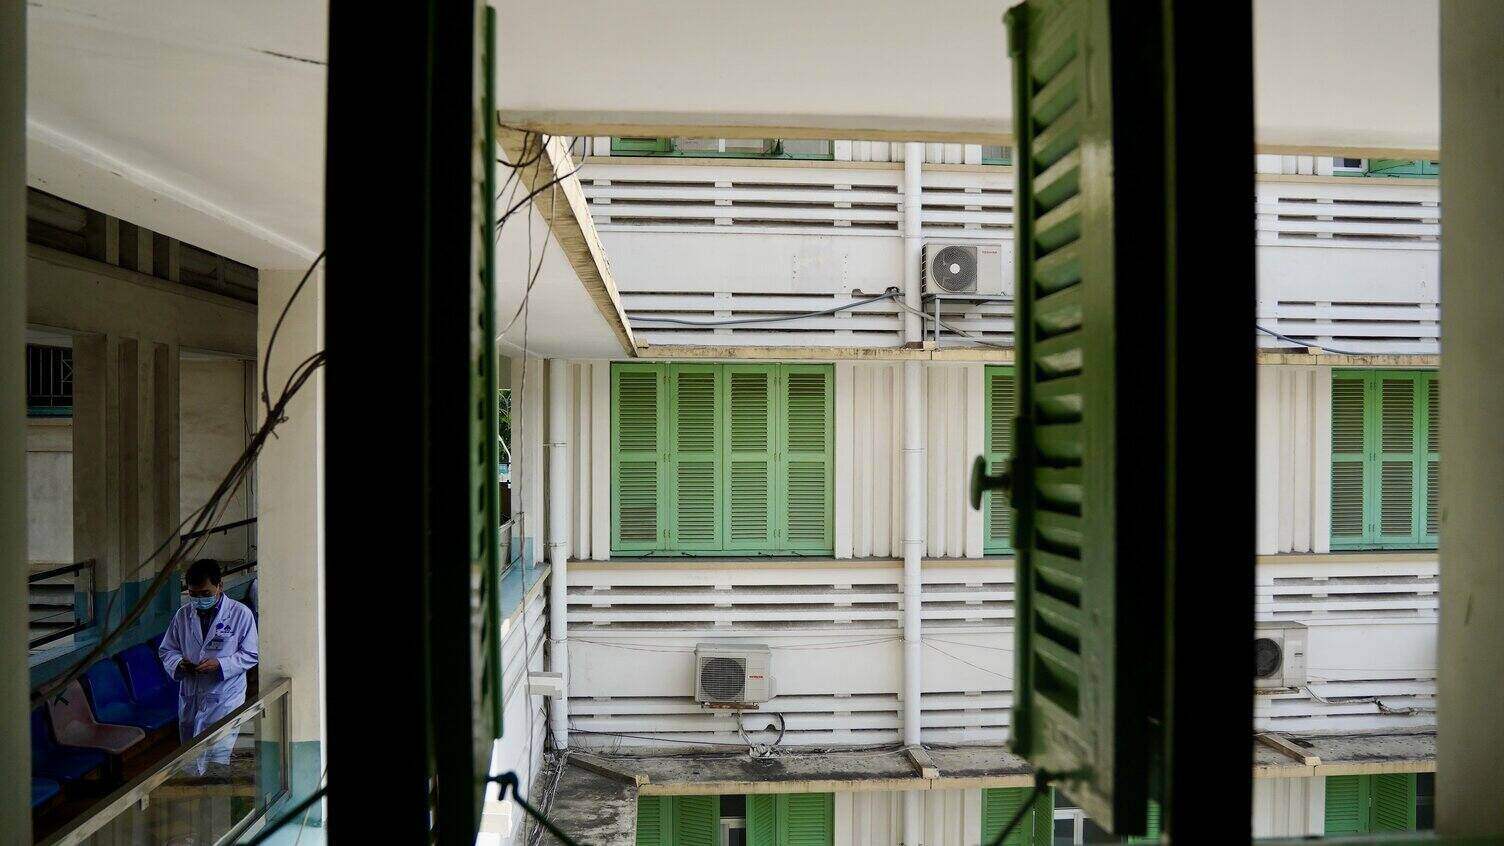 Bệnh viện có 4 tầng, nổi bật ở là những ô cửa làm bằng gỗ sơn màu xanh kiểu Pháp thường thấy những năm 1950. Toàn bộ cánh cửa vẫn được vẫn giữ nguyên kết cấu, kiểu dáng ban đầu và được sơn mới lại theo thời gian.